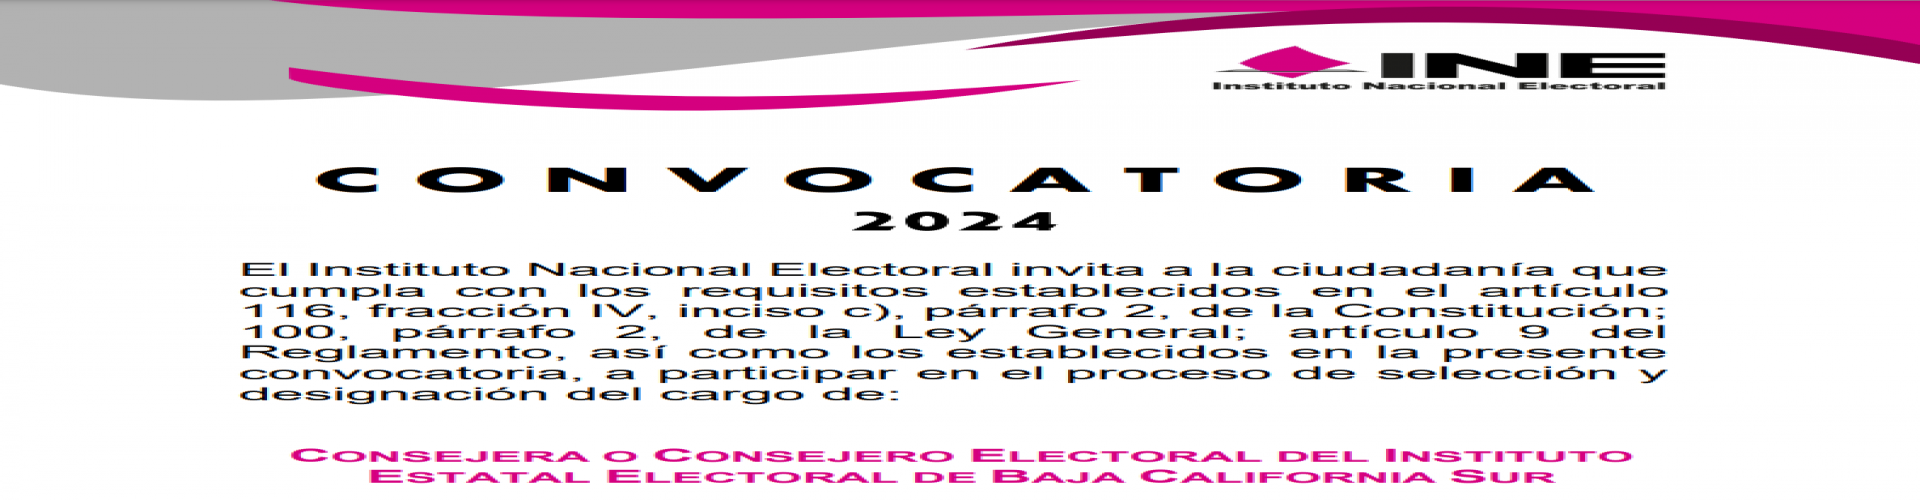 Convocatoria para la selección y designación del cargo de Consejera o Consejero Electoral del IEEBCS